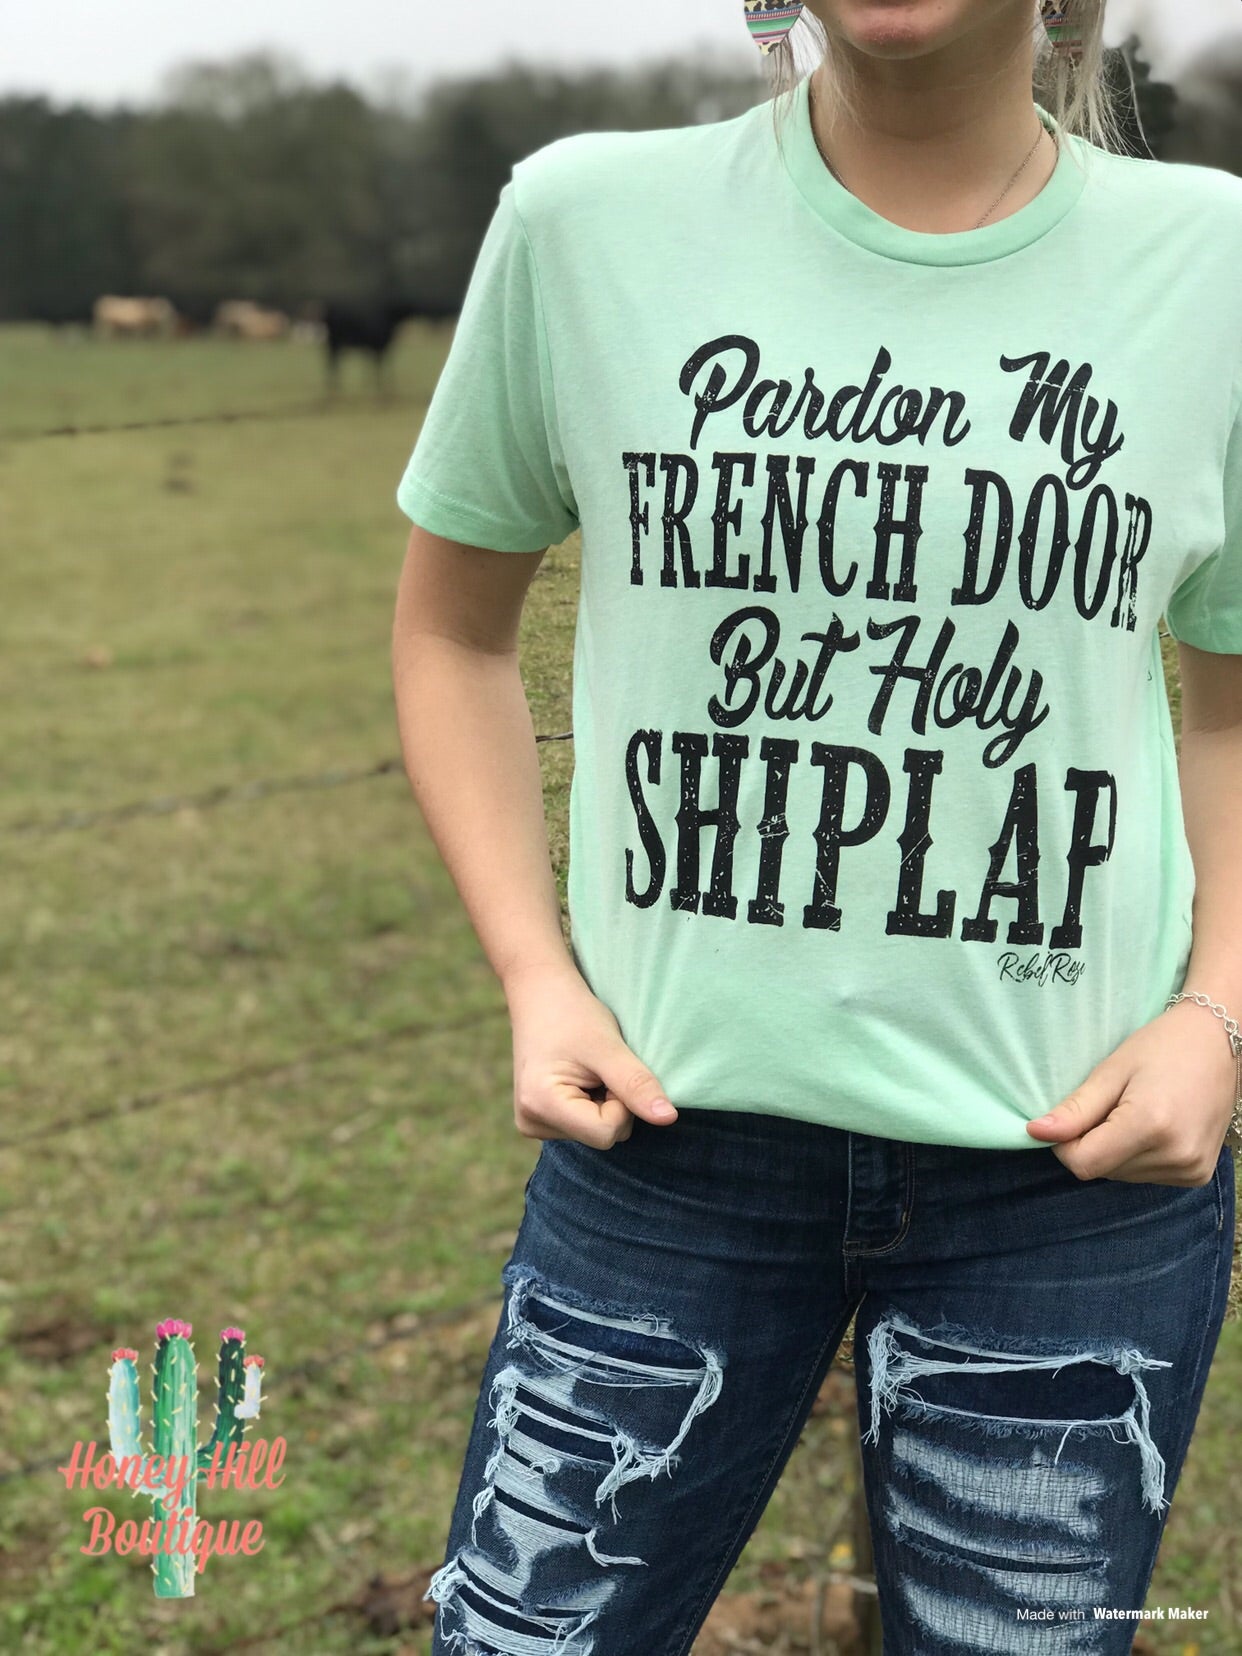 Holy Shiplap Shirt